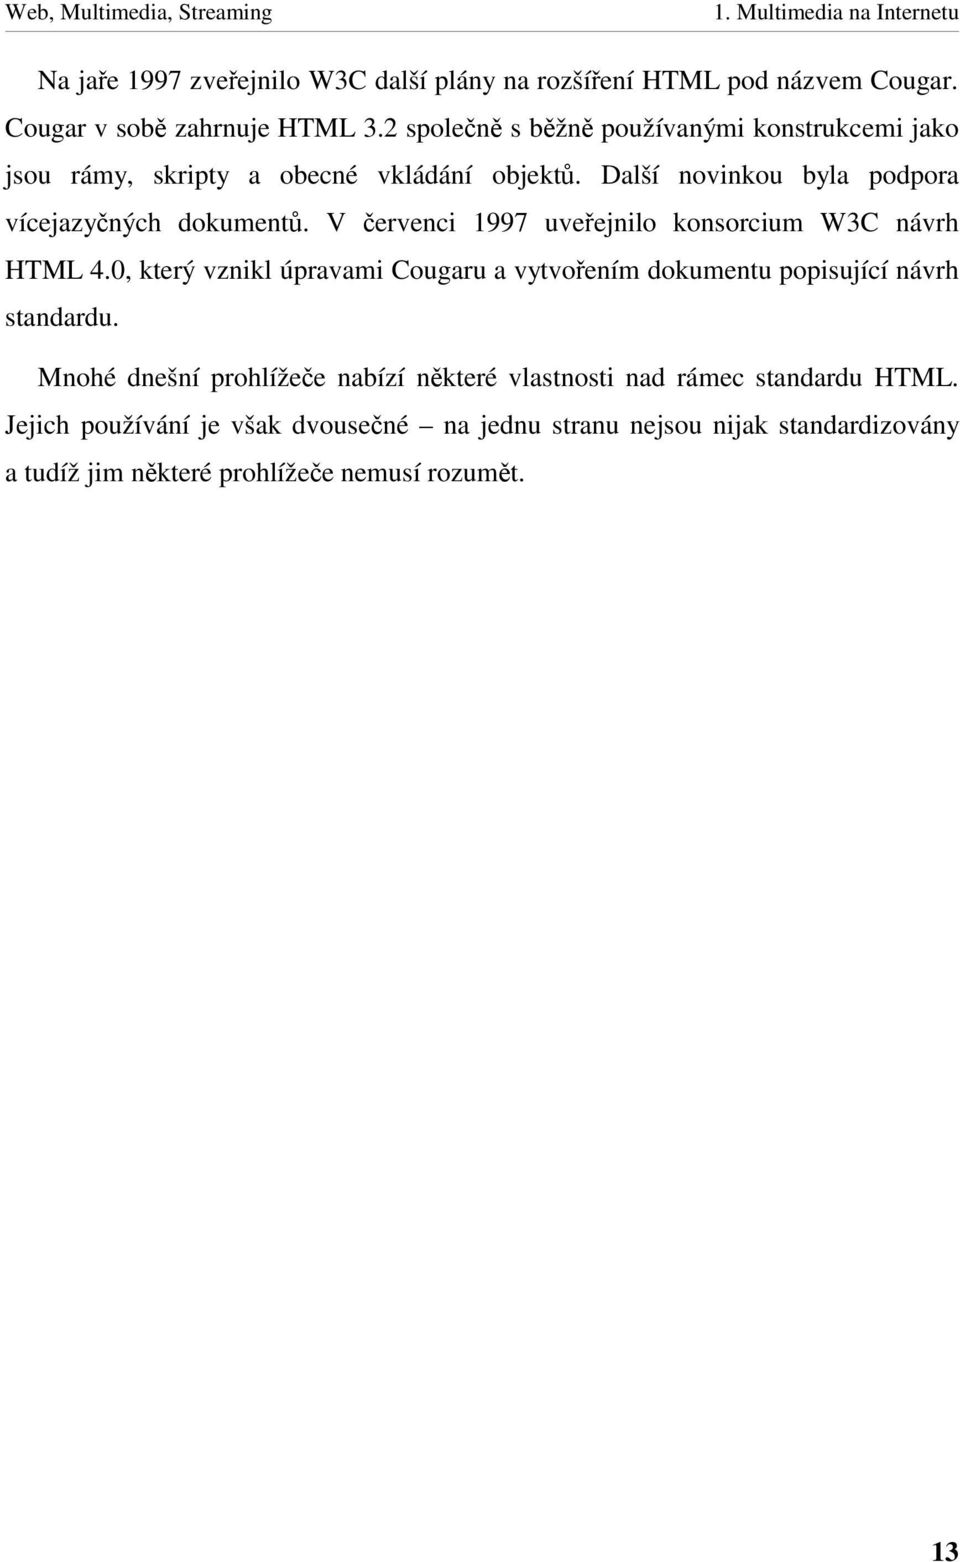 V ervenci 1997 uveejnilo konsorcium W3C návrh HTML 4.0, který vznikl úpravami Cougaru a vytvoením dokumentu popisující návrh standardu.